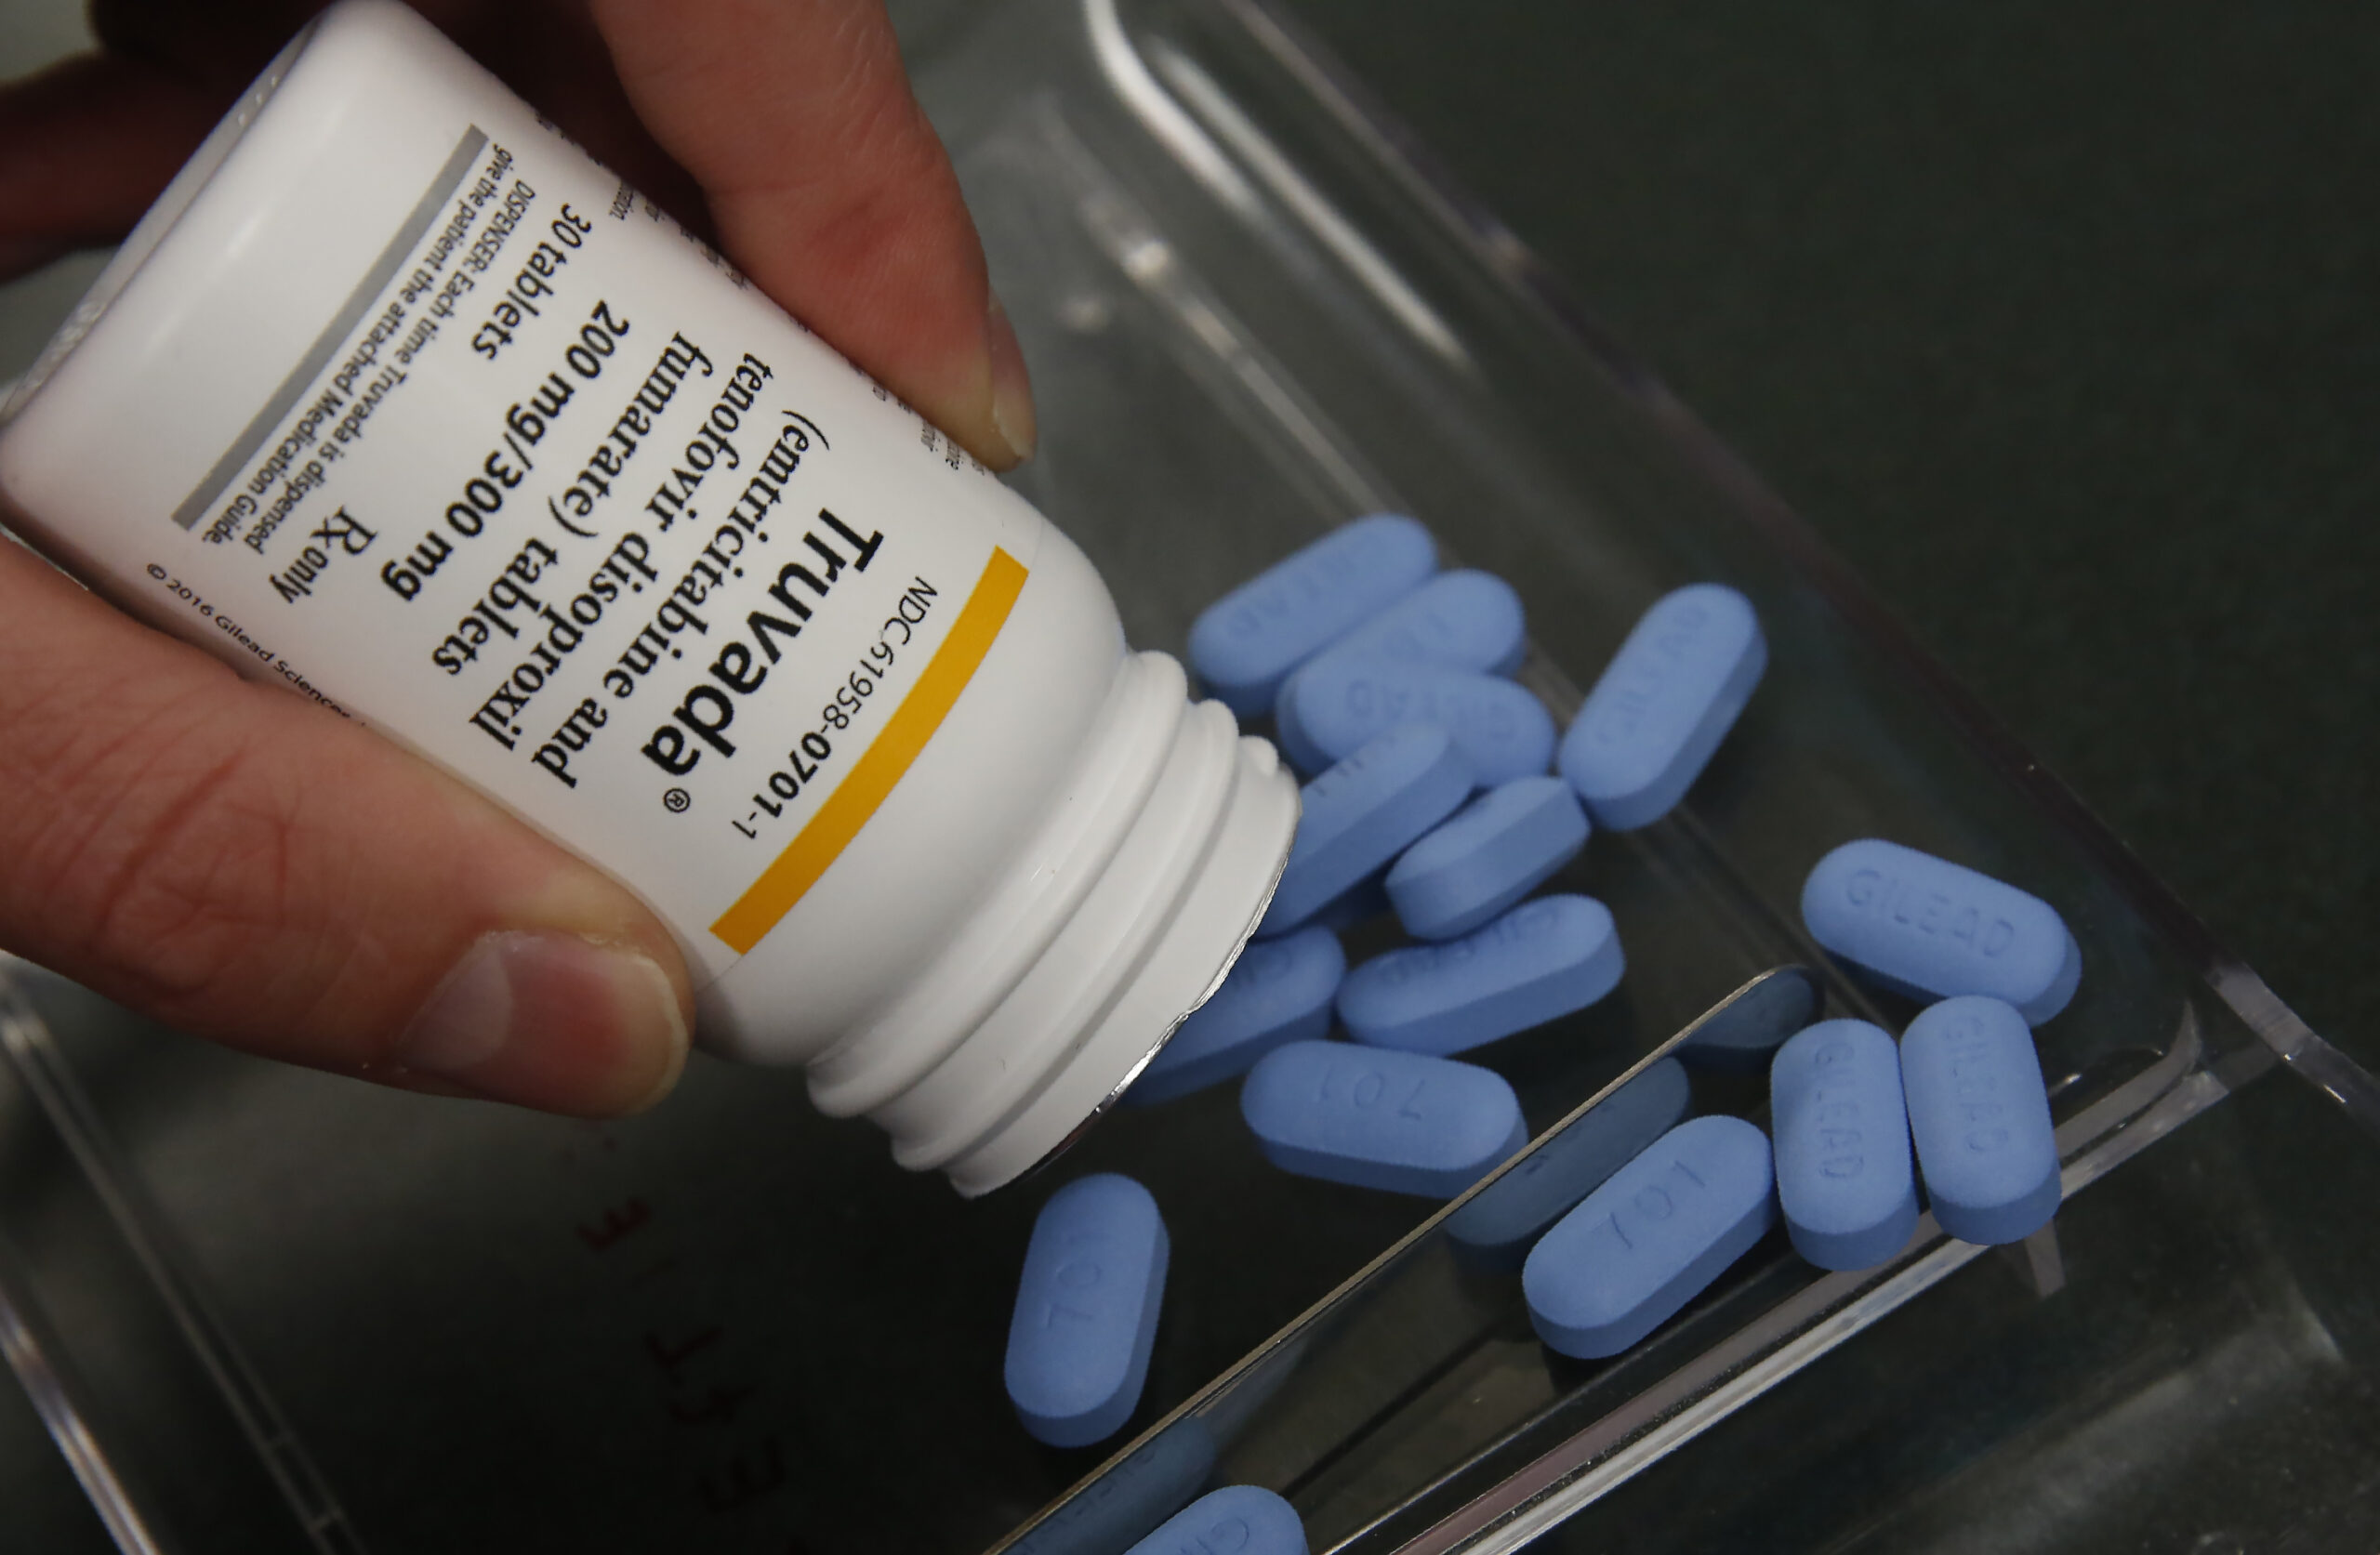 a pill bottle and blue pills